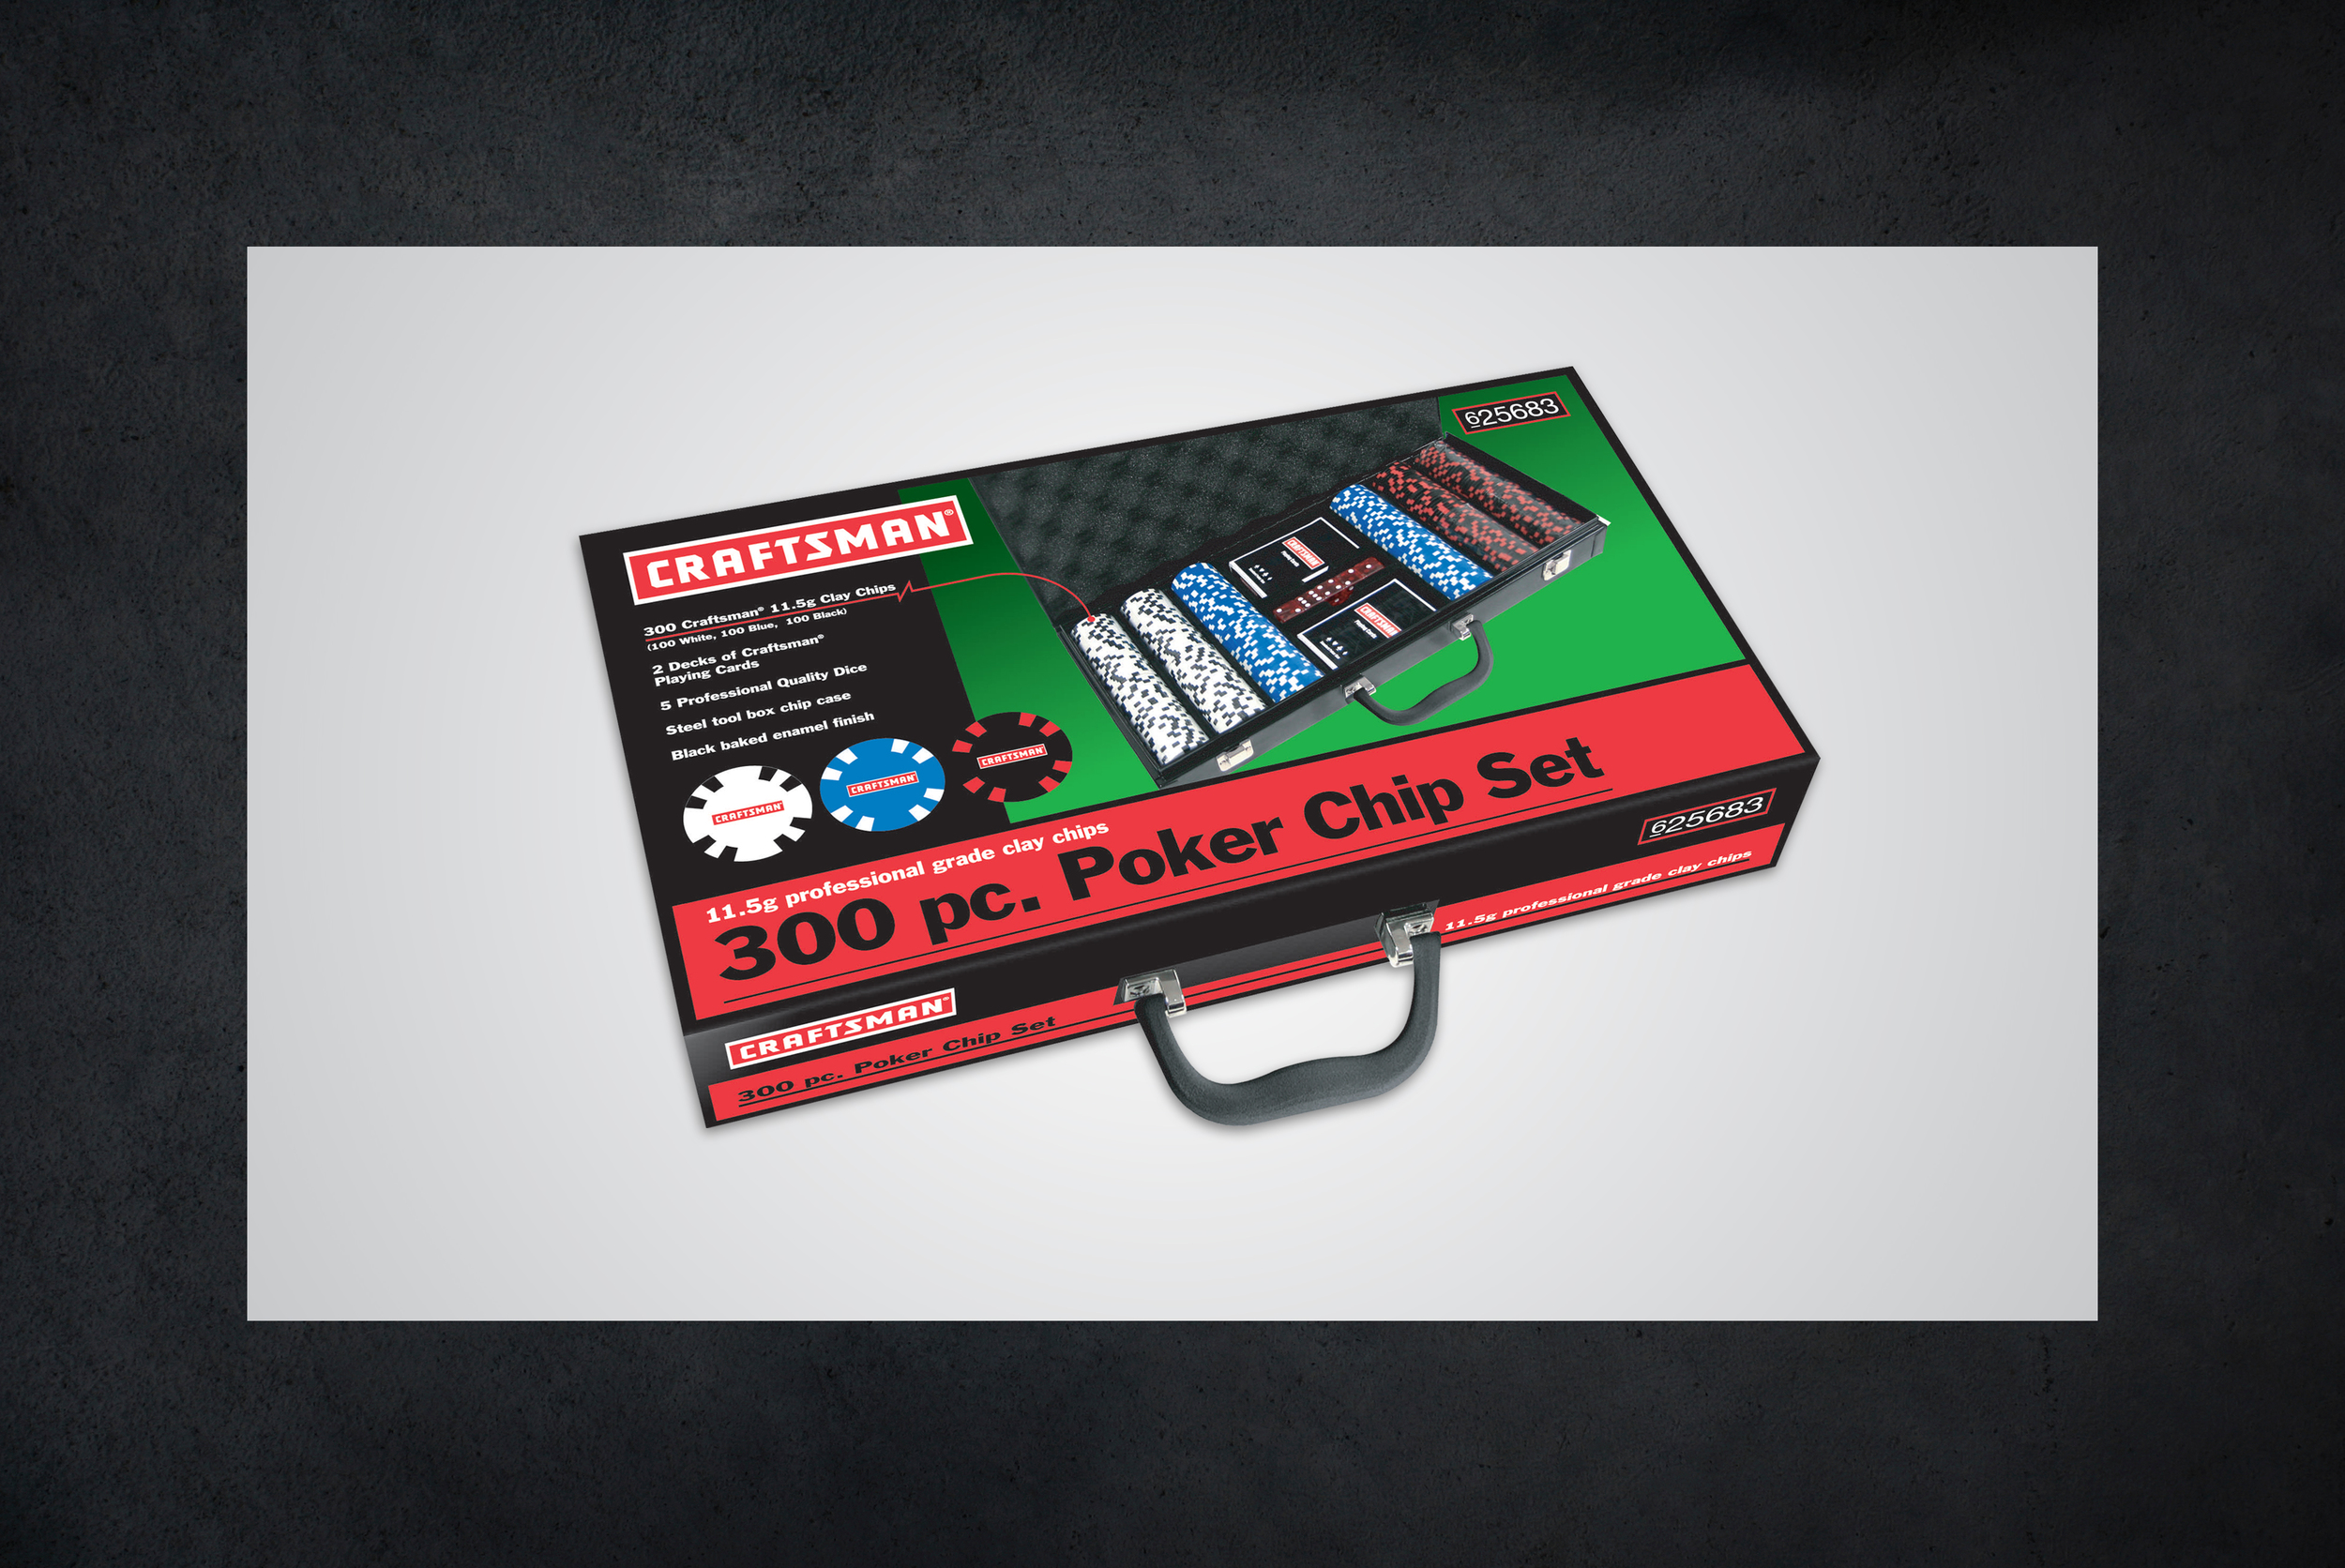 Craftsman Poker Chip Set packaging